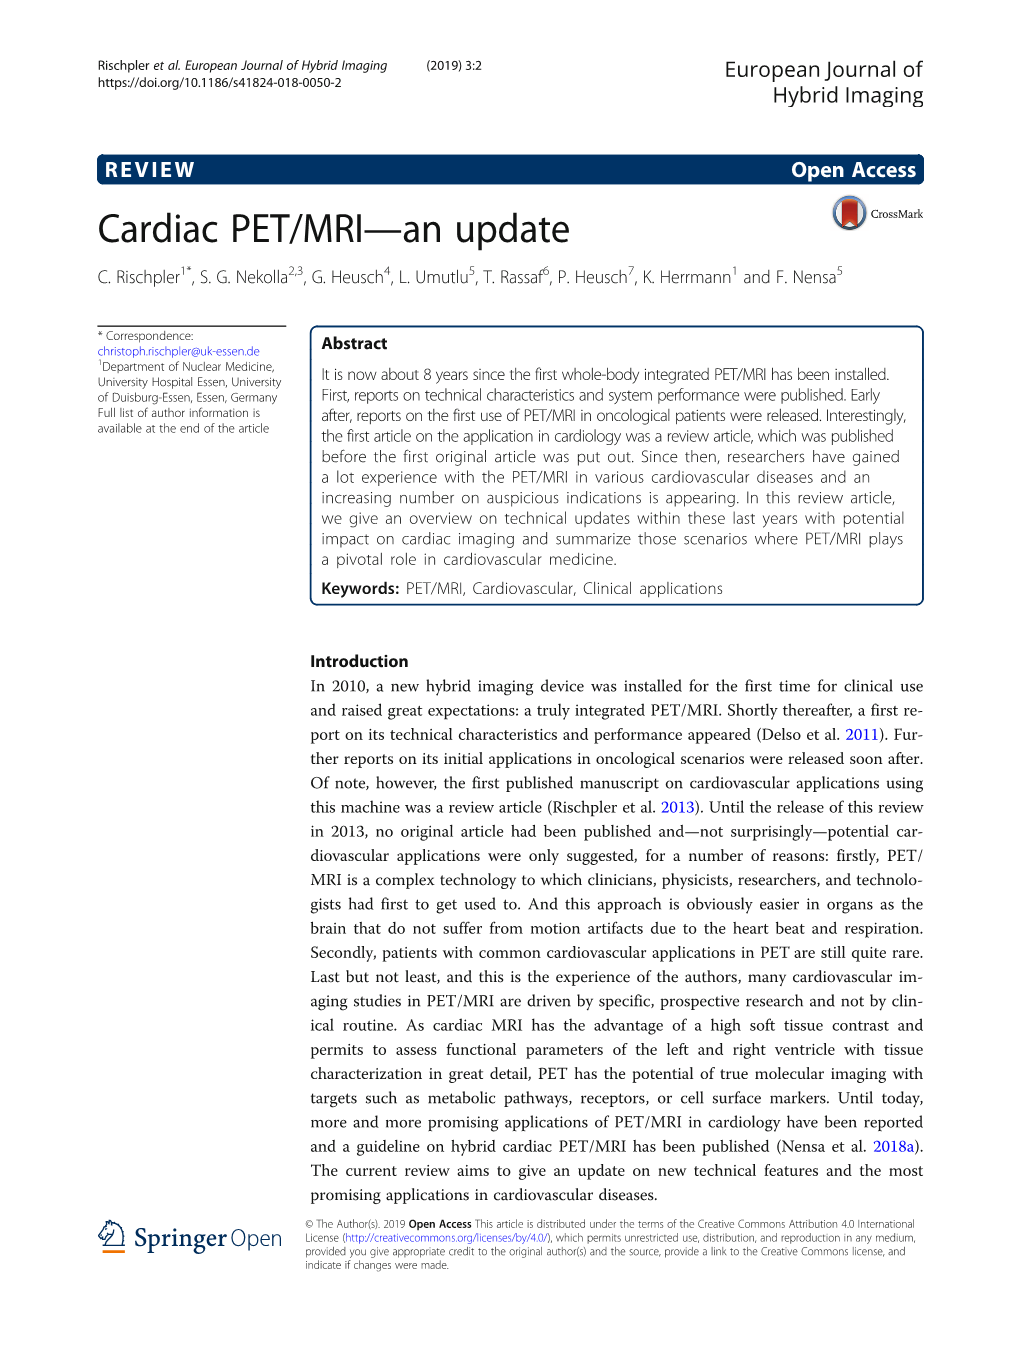 Cardiac PET/MRI—An Update C